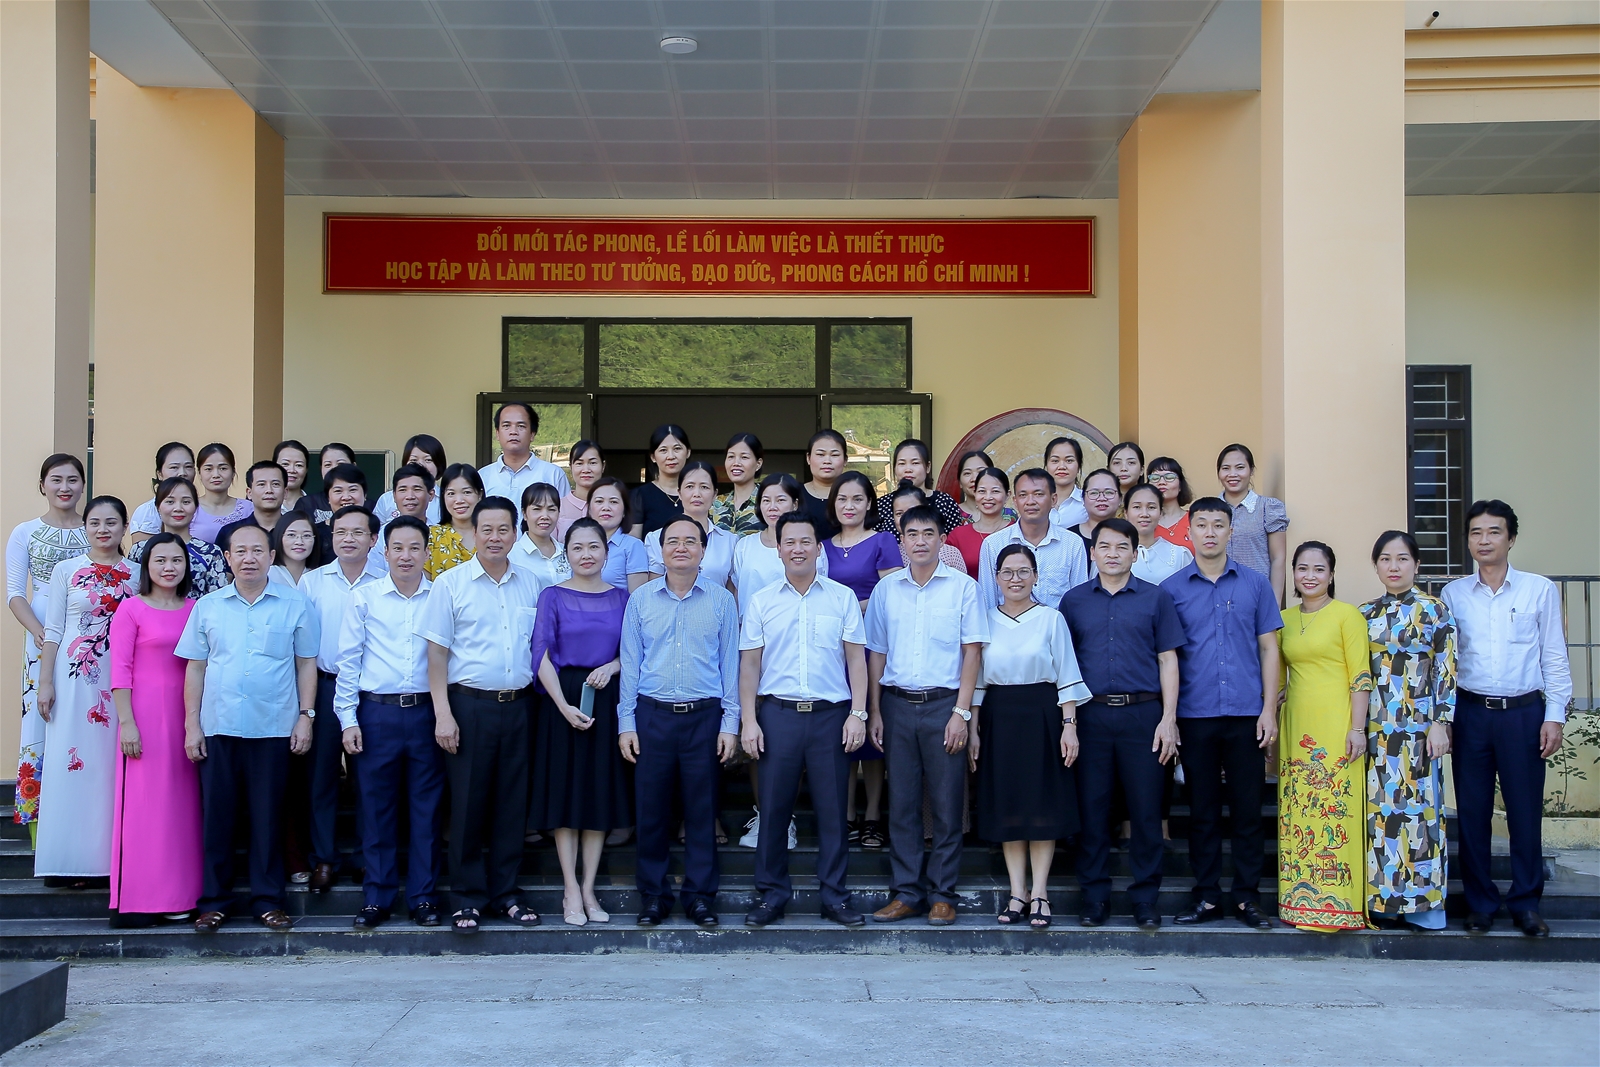 Bộ trưởng Phùng Xuân Nhạ thăm và trao tặng phòng máy vi tính cho trường THPT Lê Hồng Phong - Ảnh minh hoạ 7